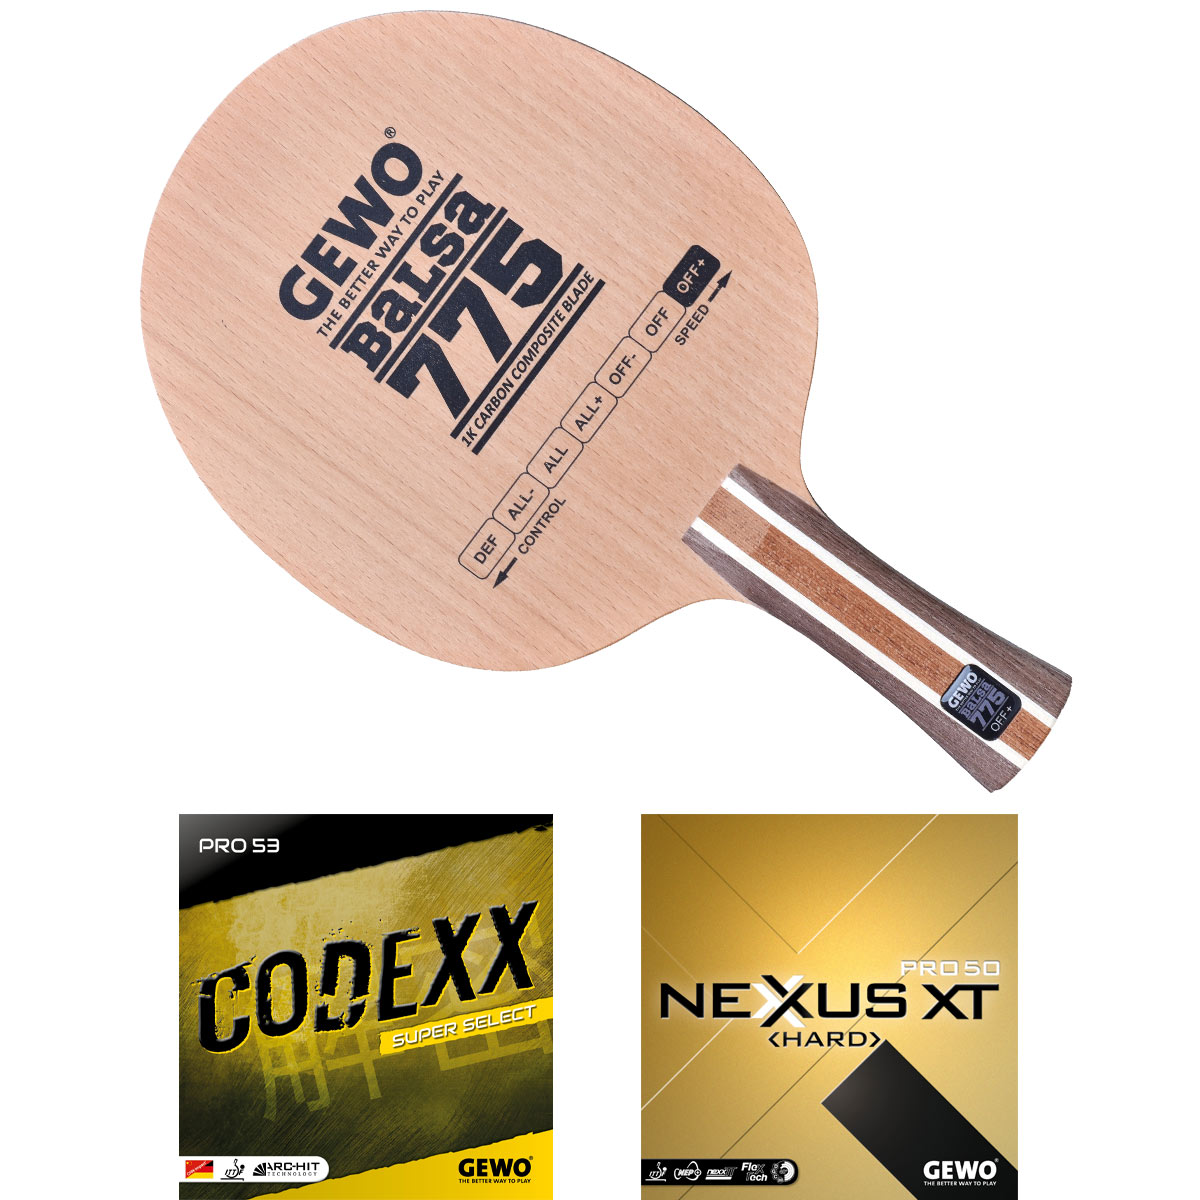 GEWO Schläger: Holz Balsa Carbon 775 mit Codexx Pro53 SupSel + Nexxus XT Pro50 Hard